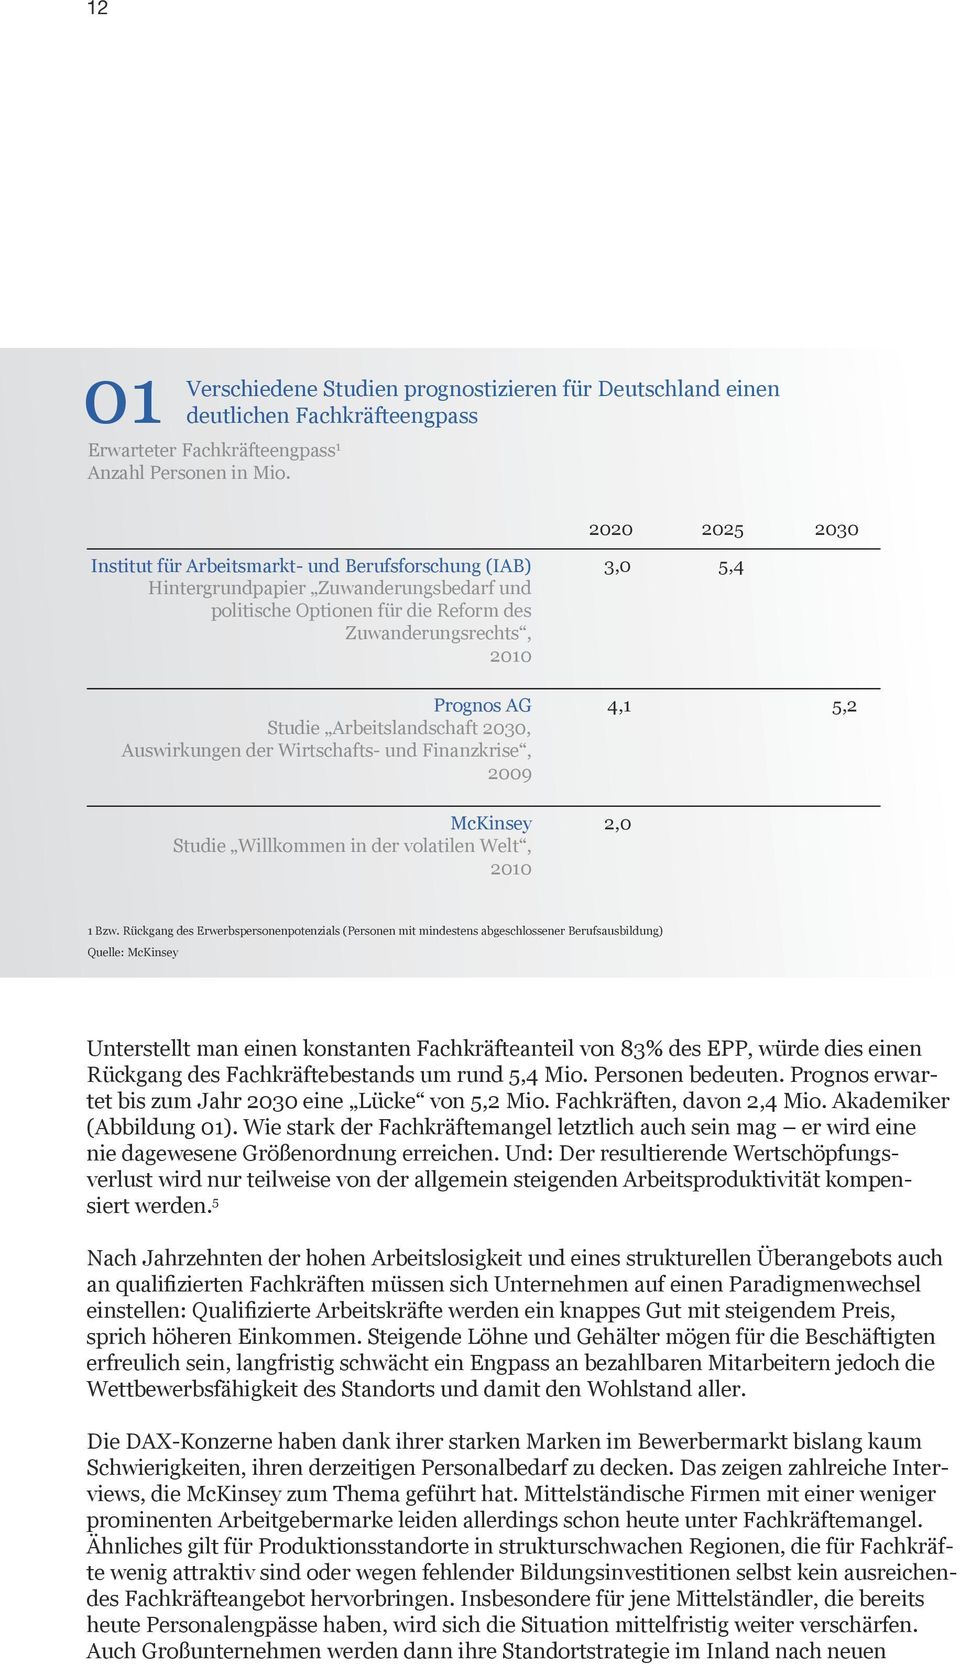 Die Bundesagentur für Arbeit hat in einer Publikation zum Thema Perspektive 2025: Fachkräfte für Deutschland eine umfassende Analyse von ungenutzten Potenzialen für mehr Fachkräfte vorgelegt.